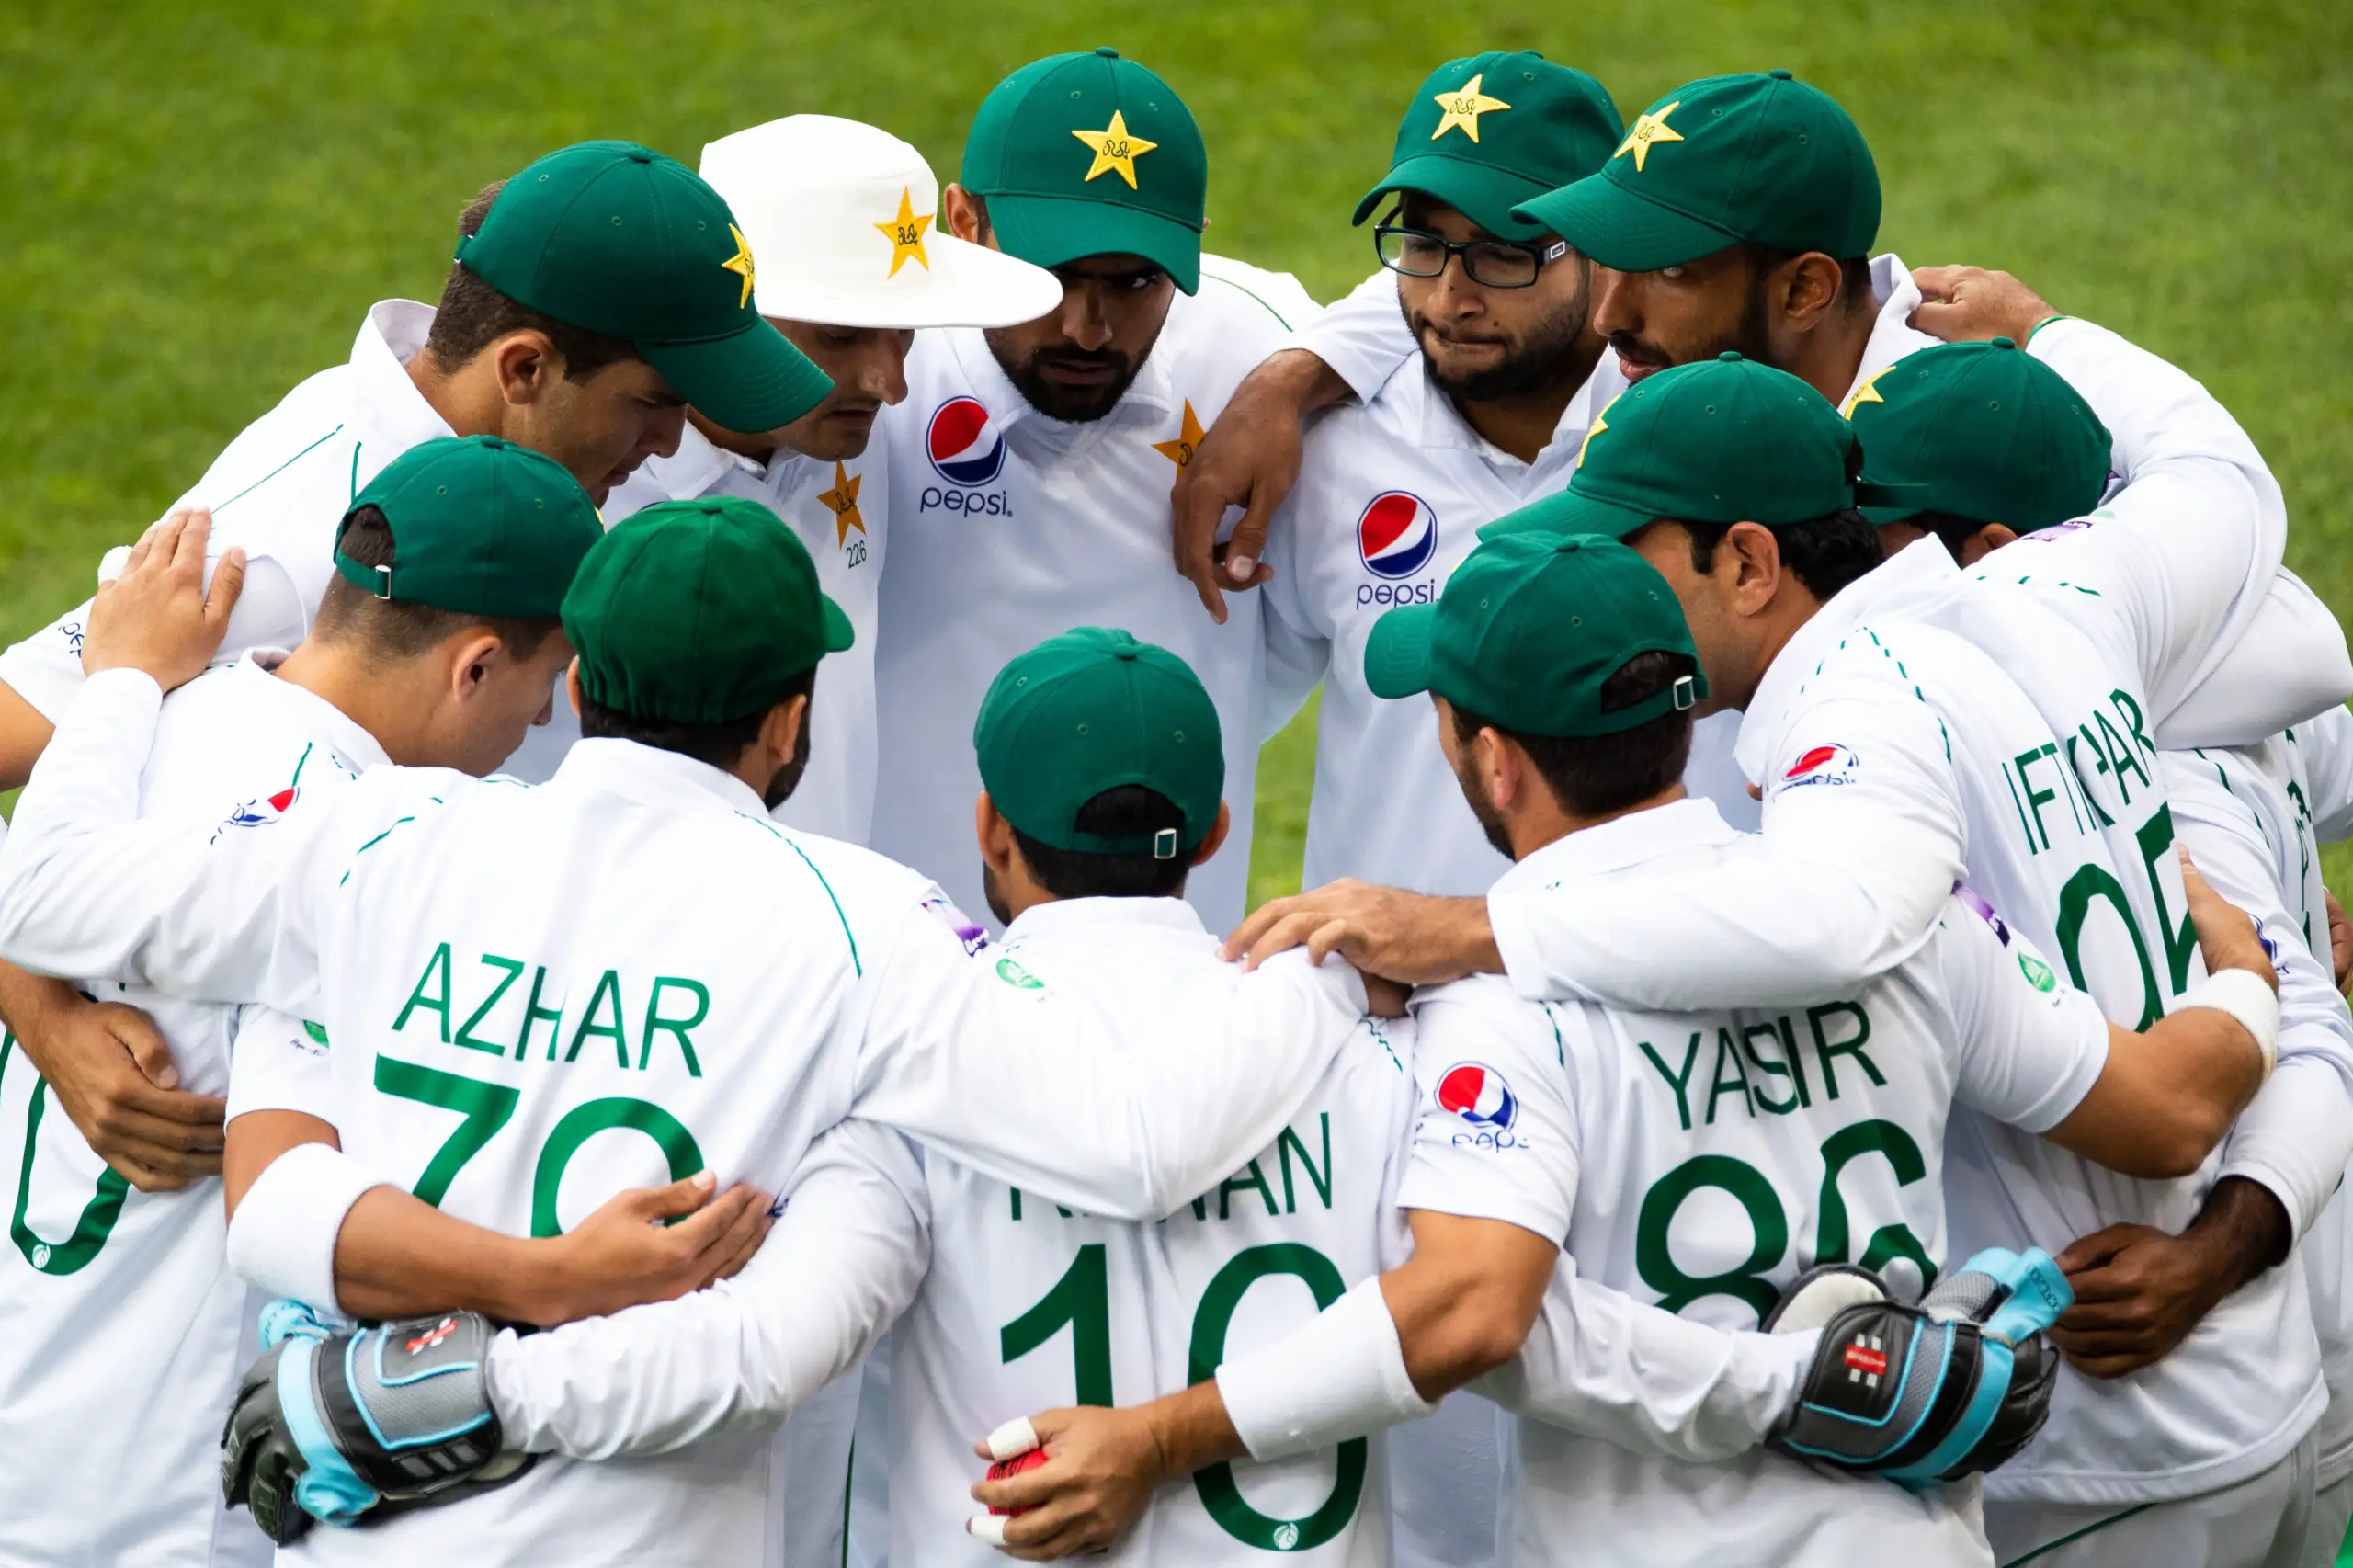 Sarfaraz Ahmed, Azhar Ali to lead in an intra-squad Test match